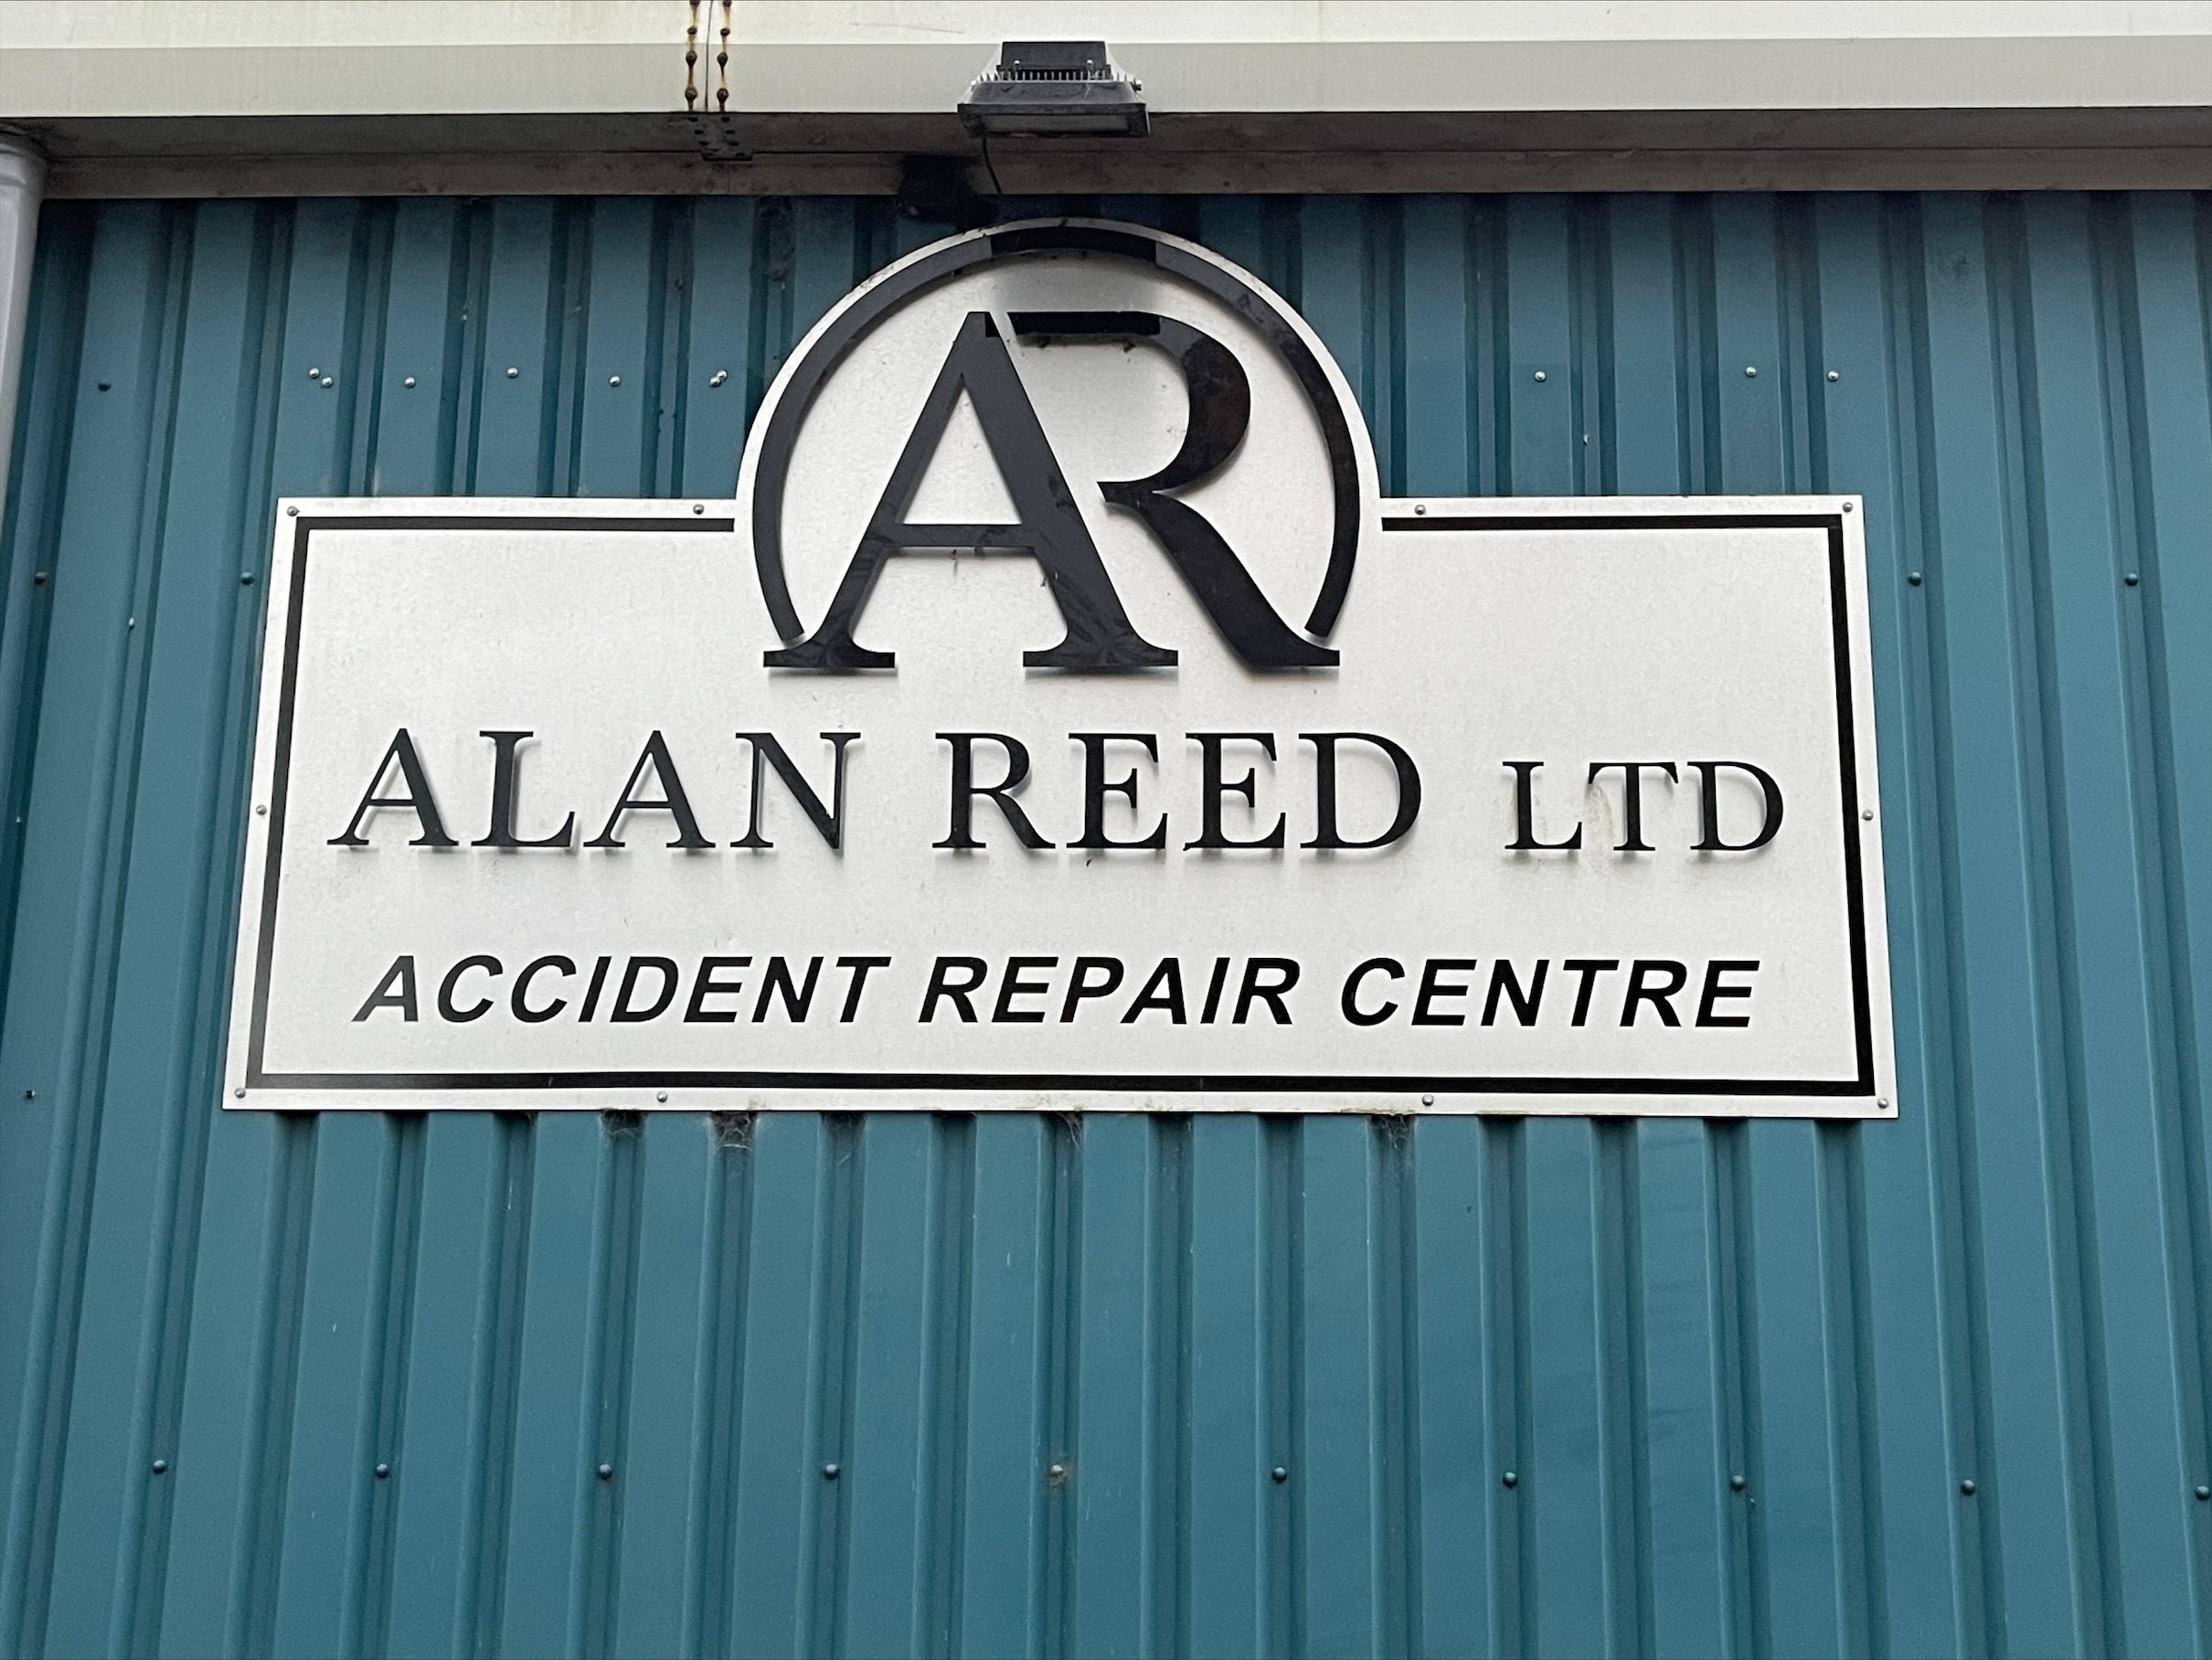 Alan Reed Ltd